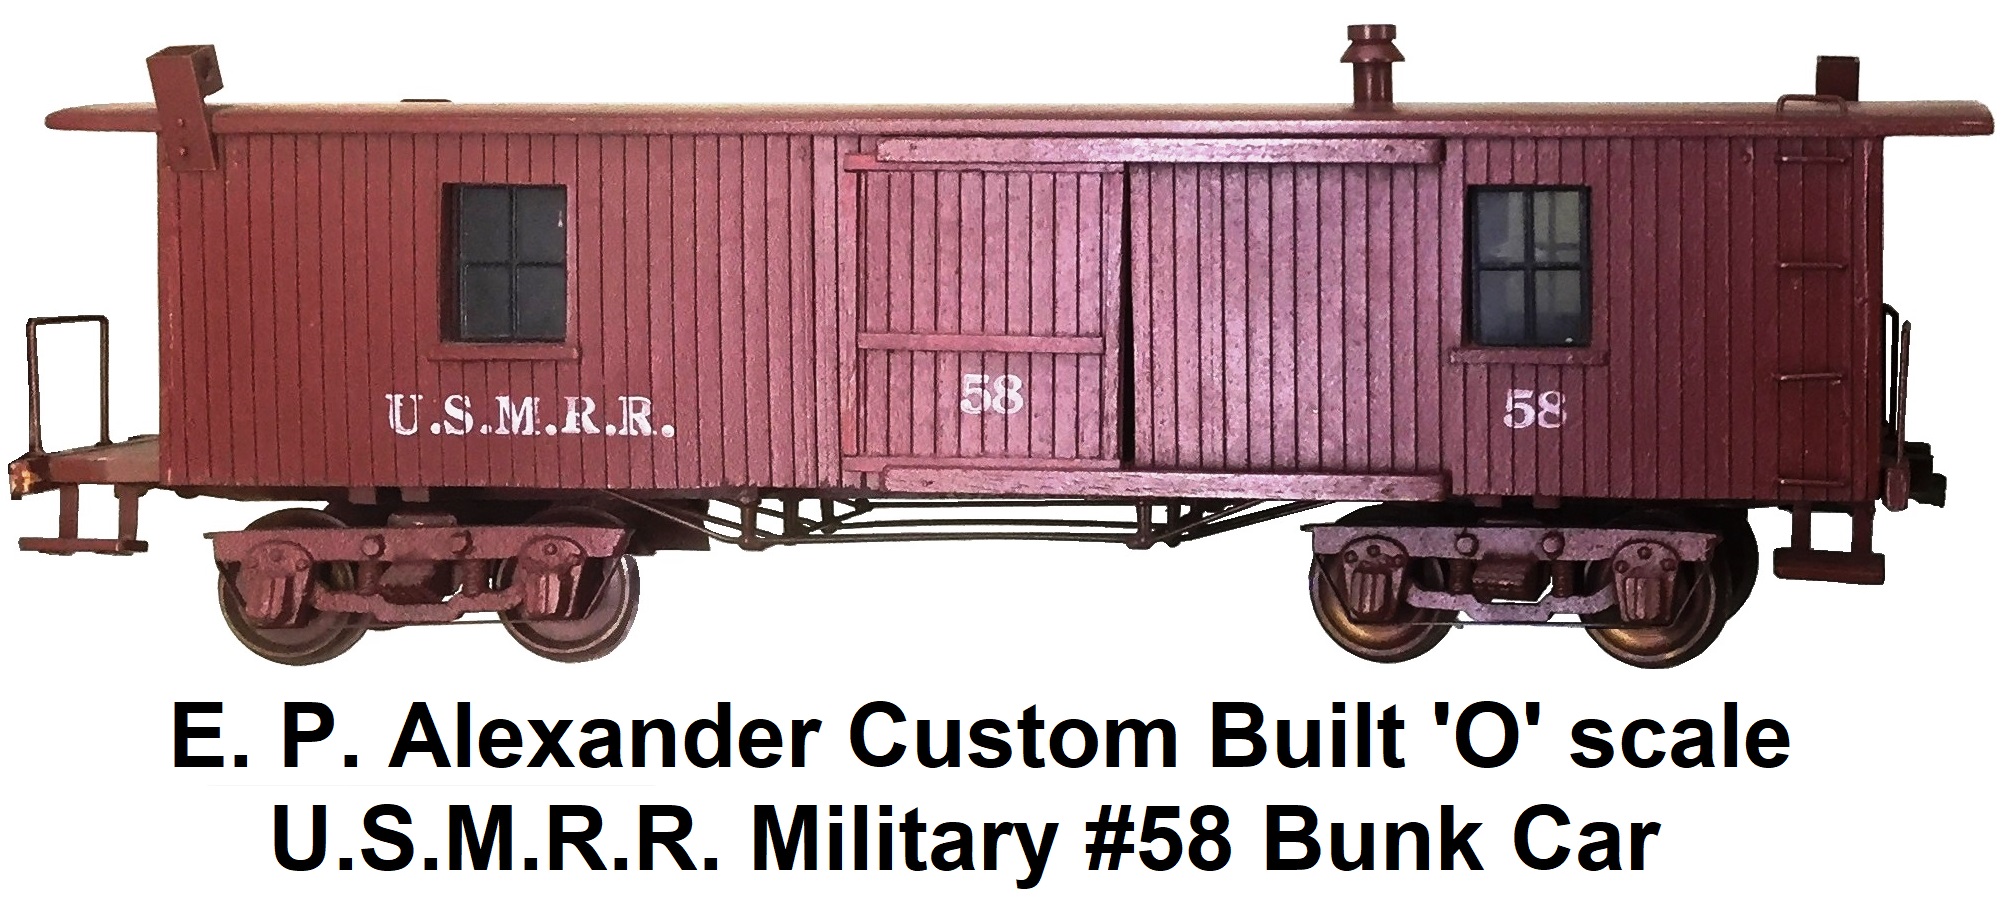 E. P. Alexander custom built 'O' scale U.S.M.R.R. #58 Bunk car